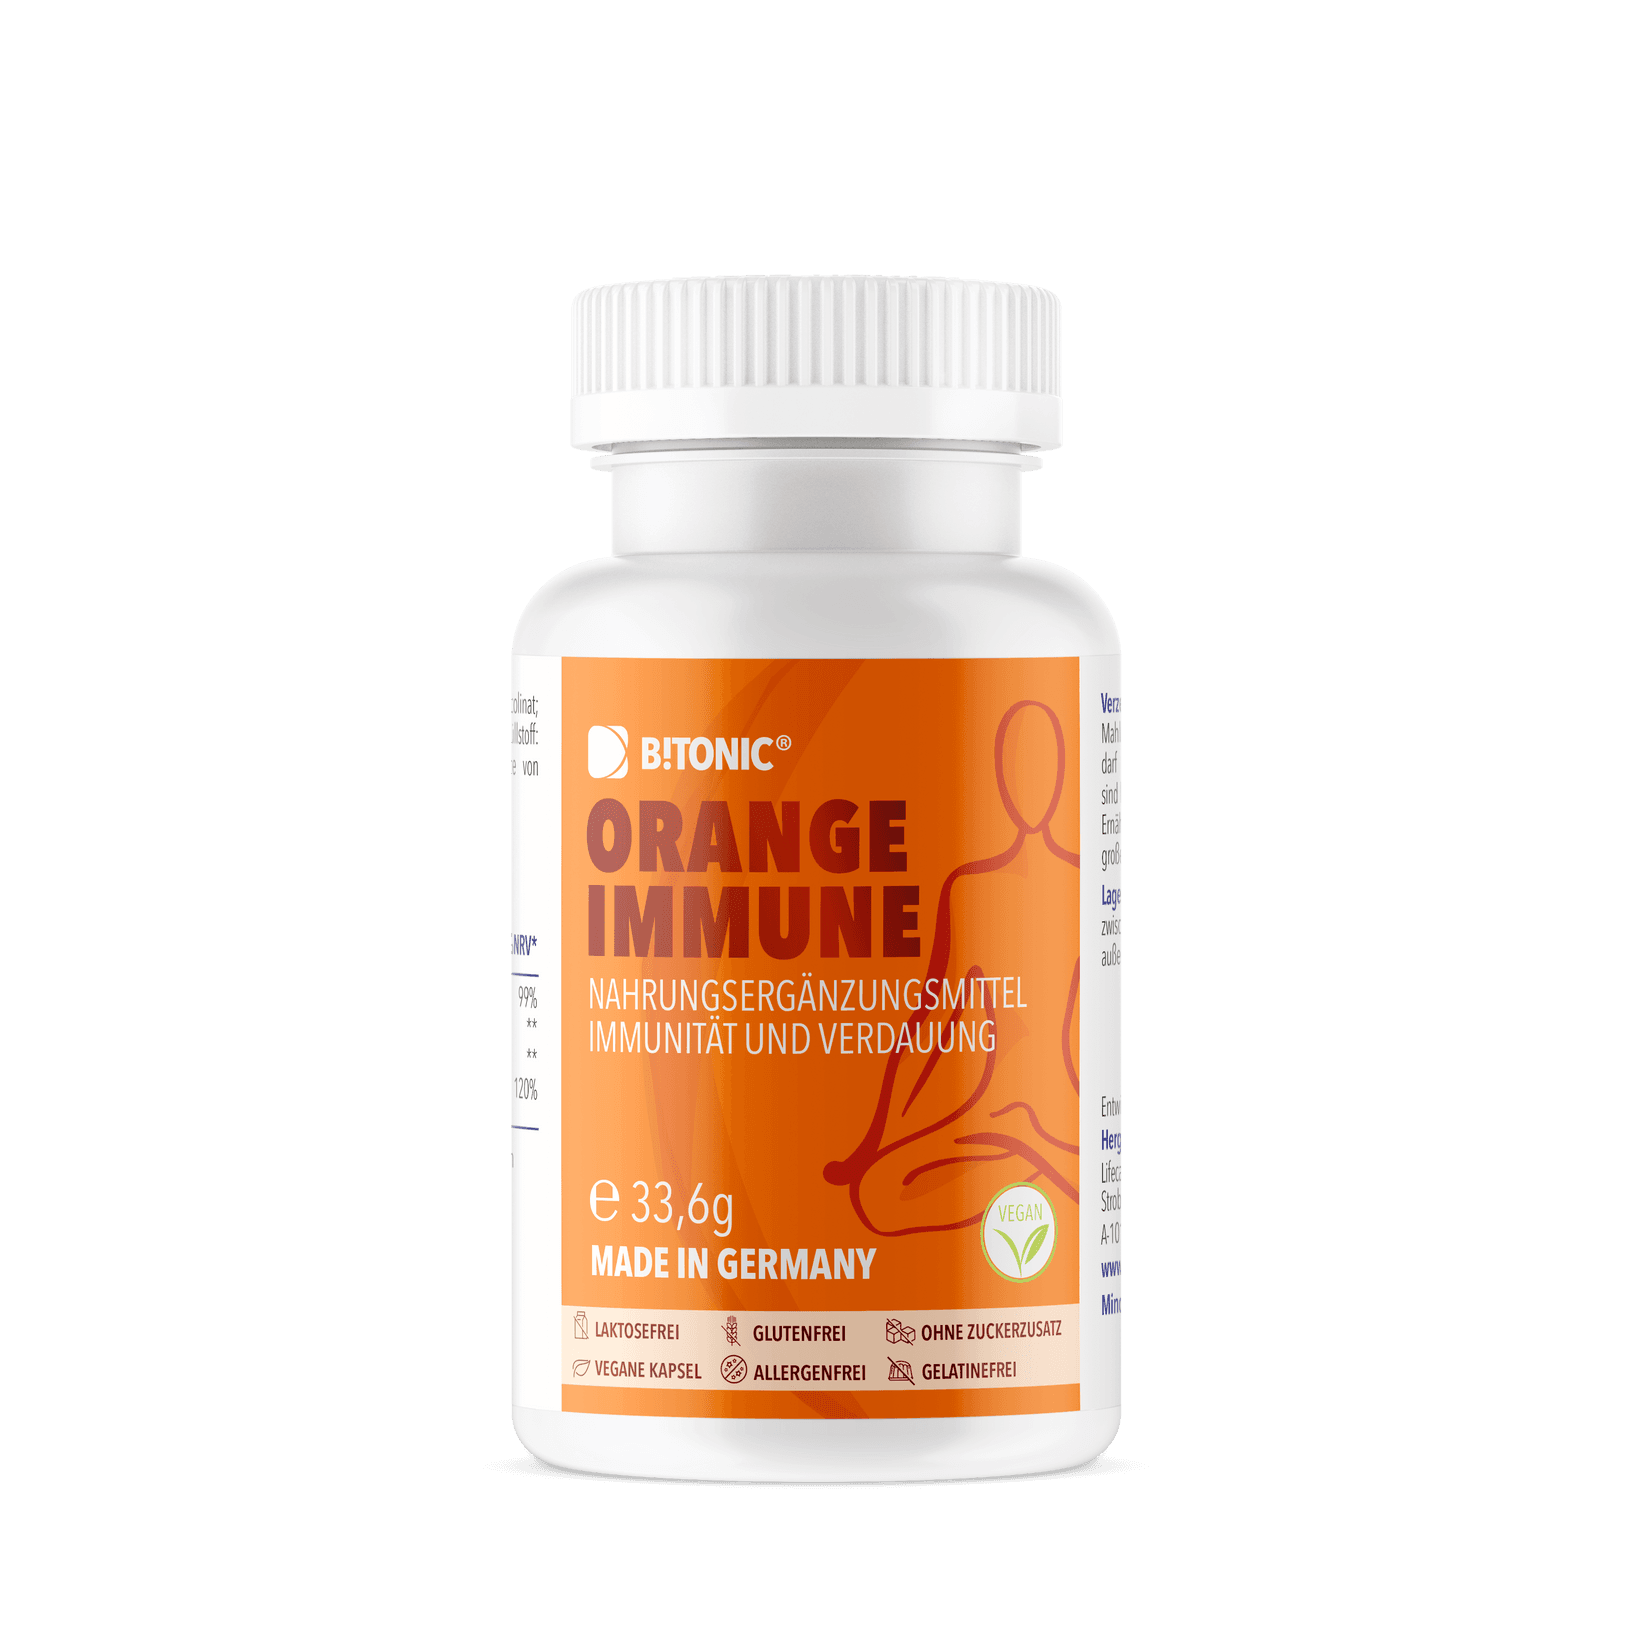 BTONIC Orange Immune